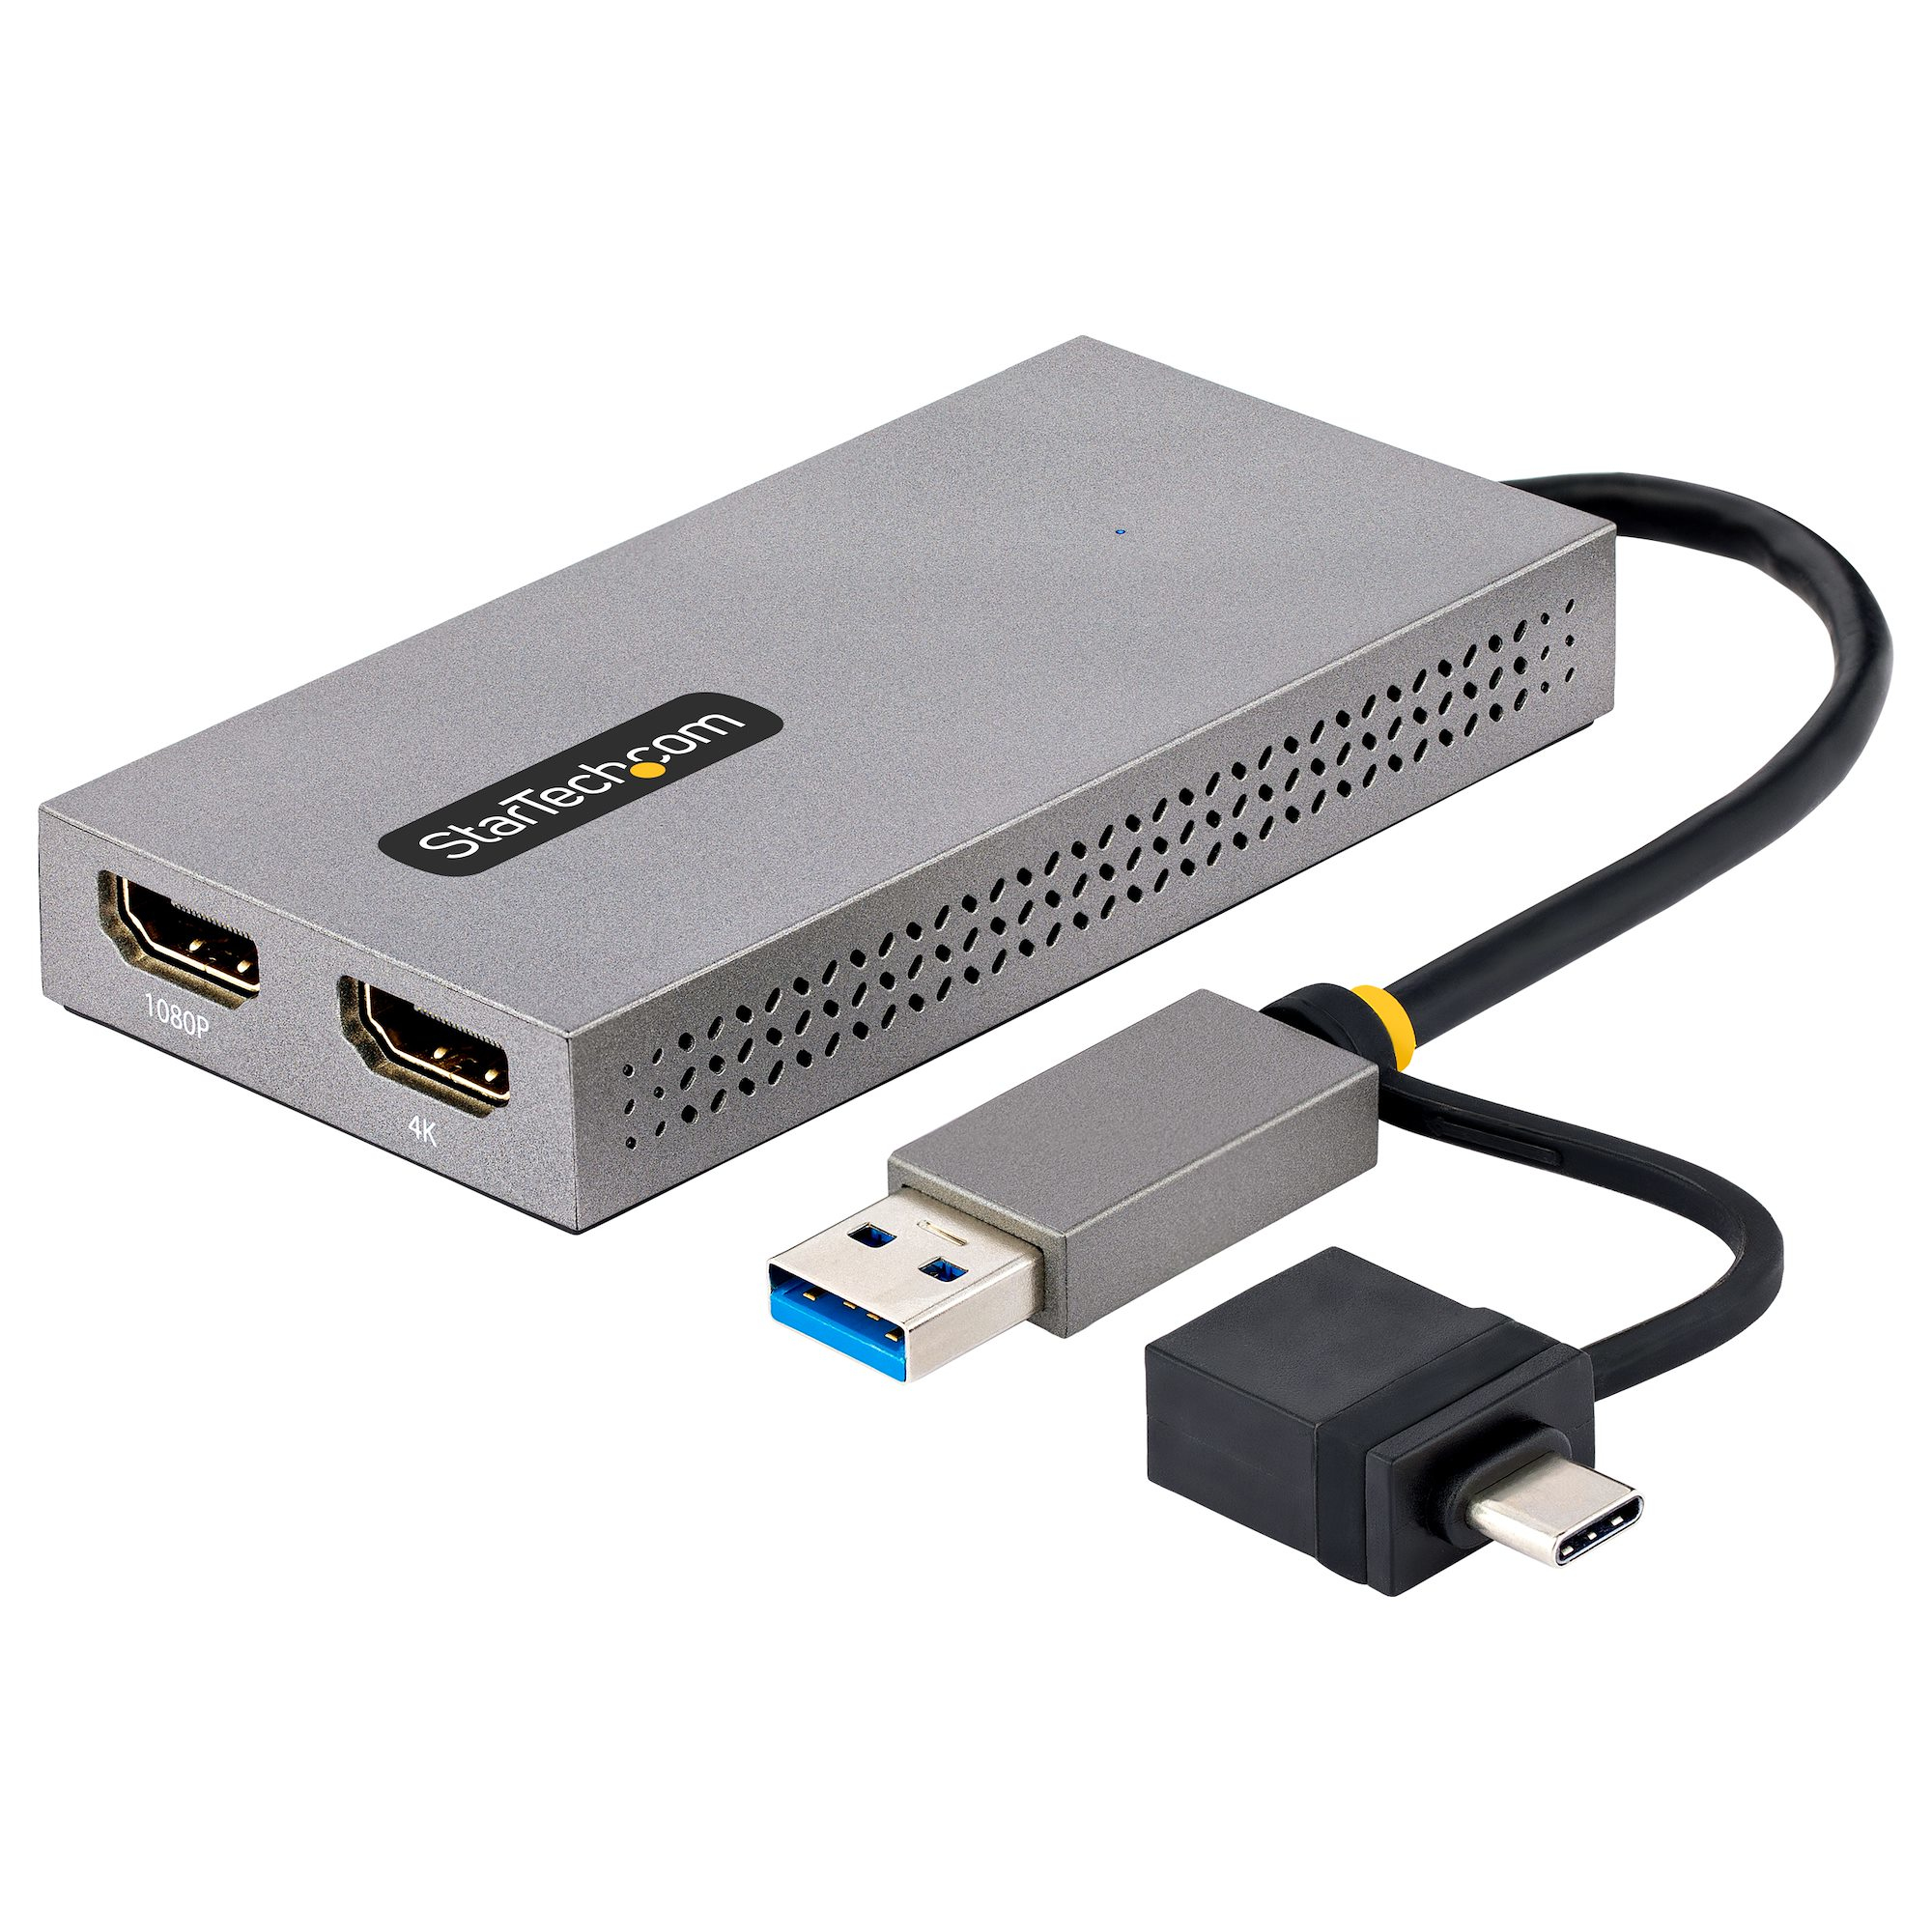 Image of StarTech.com Adattatore USB 3.0 a HDMI, Scheda Video Esterna USB 3.0 a Doppio HDMI (1x 4K30Hz/1x 1080p), Cavo da 11cm integrato con Dongle da USB-A a USB-C Convertitore da USB-A/C a Dual HDMI - Win/Mac